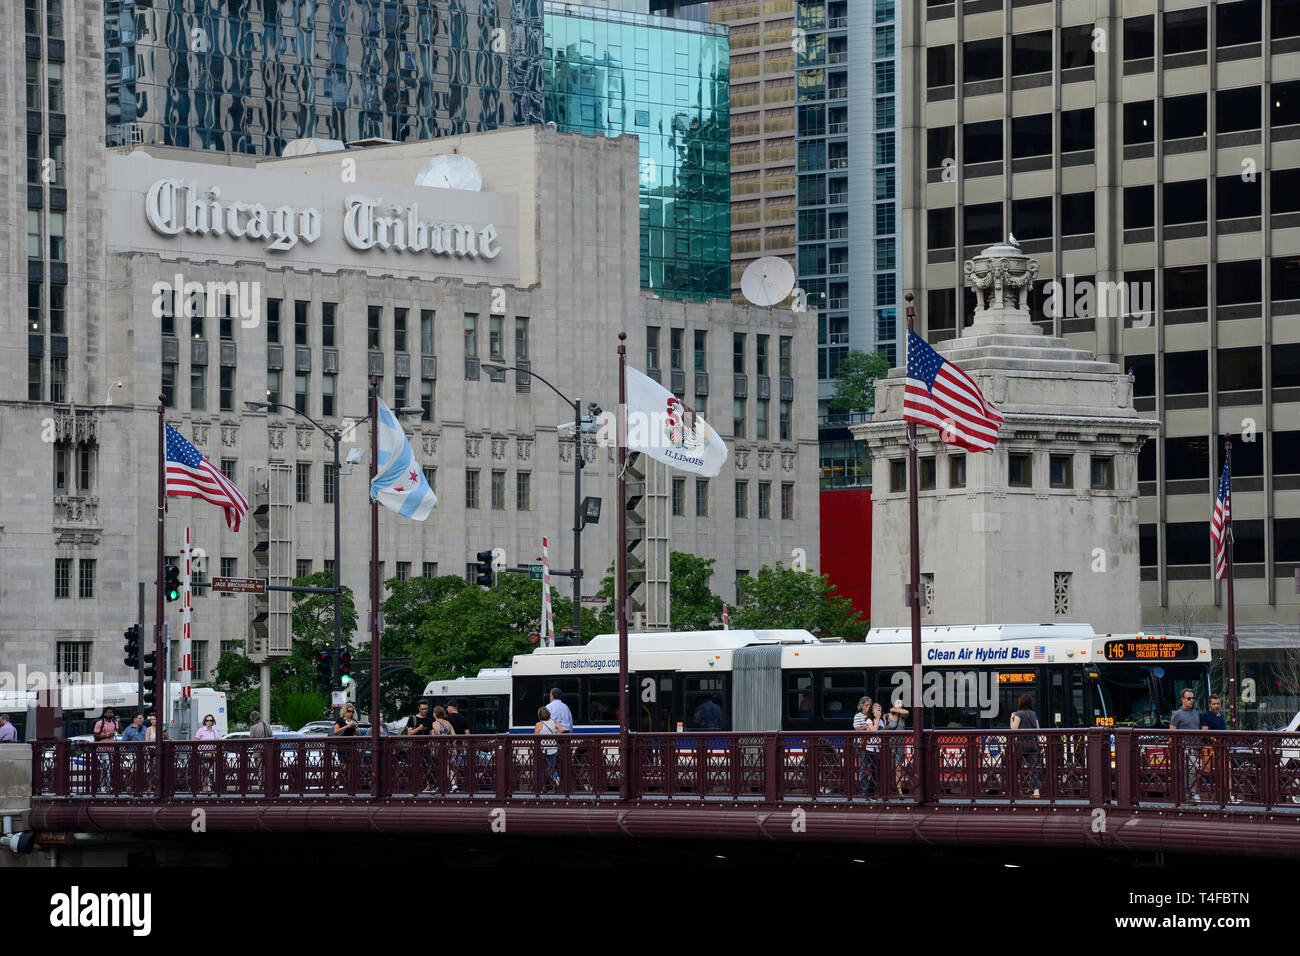 USA Chicago, centre-ville, le journal Chicago Tribune office et la qualité de l'Air Bus hybride /Stadtzentrum mit der Redaktion, Hochhaeusern Zeitung Chicaco Tribune Banque D'Images